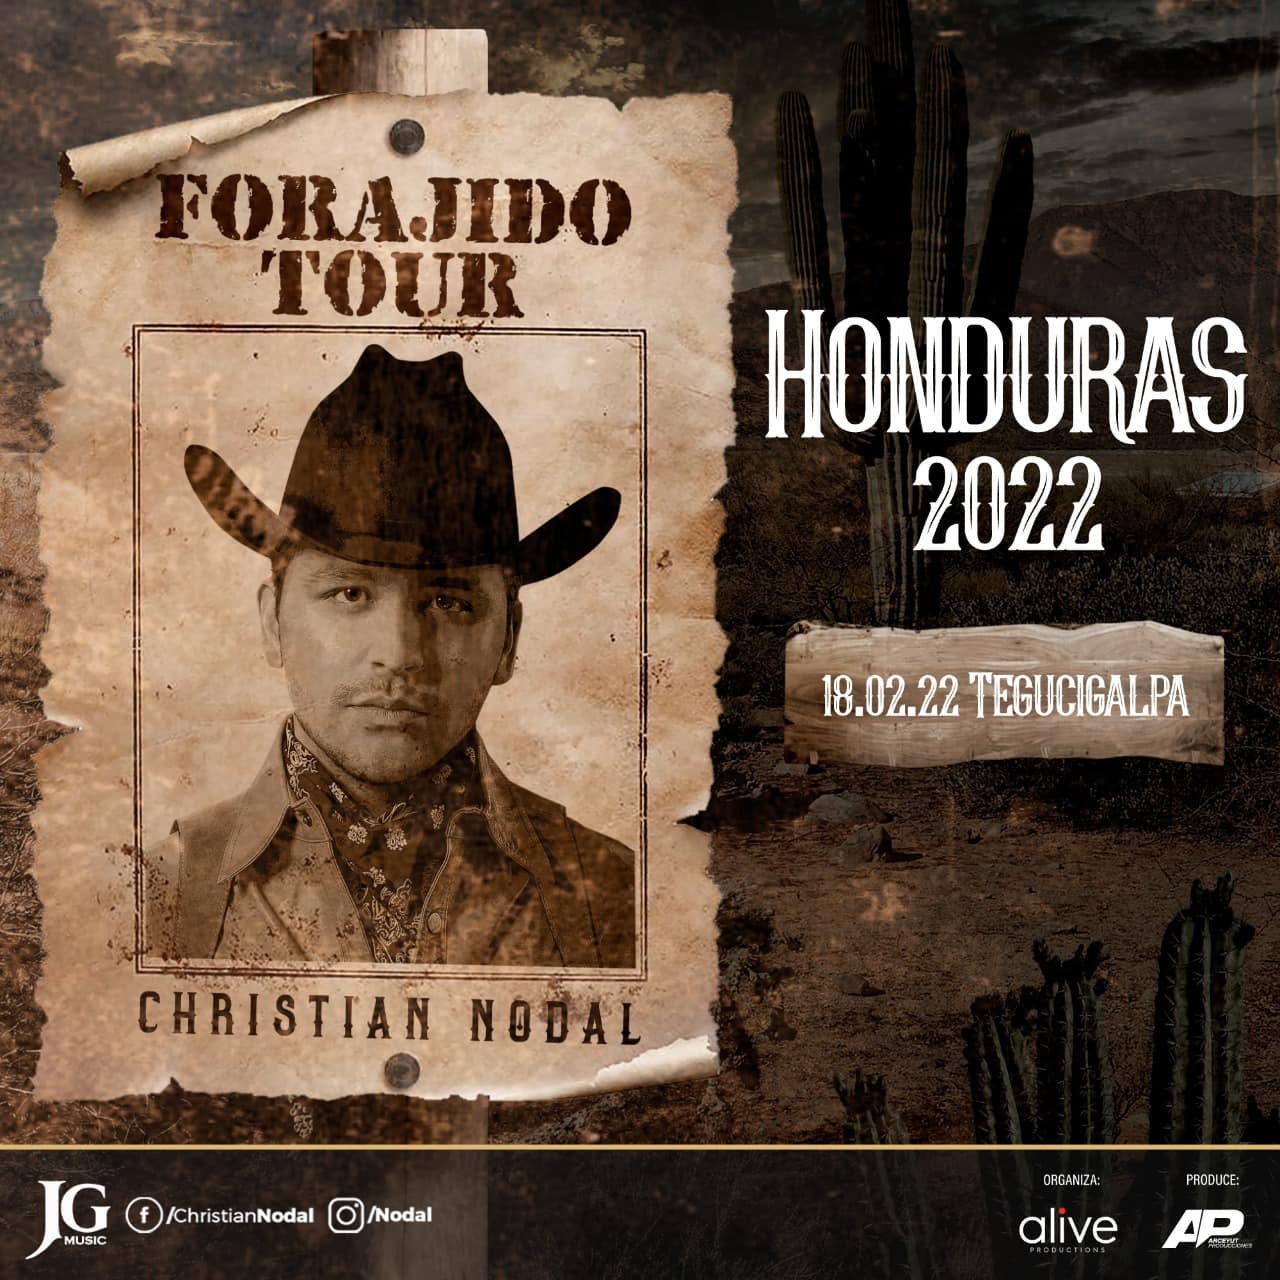 Anuncio del concierto de Christian Nodal en Honduras.